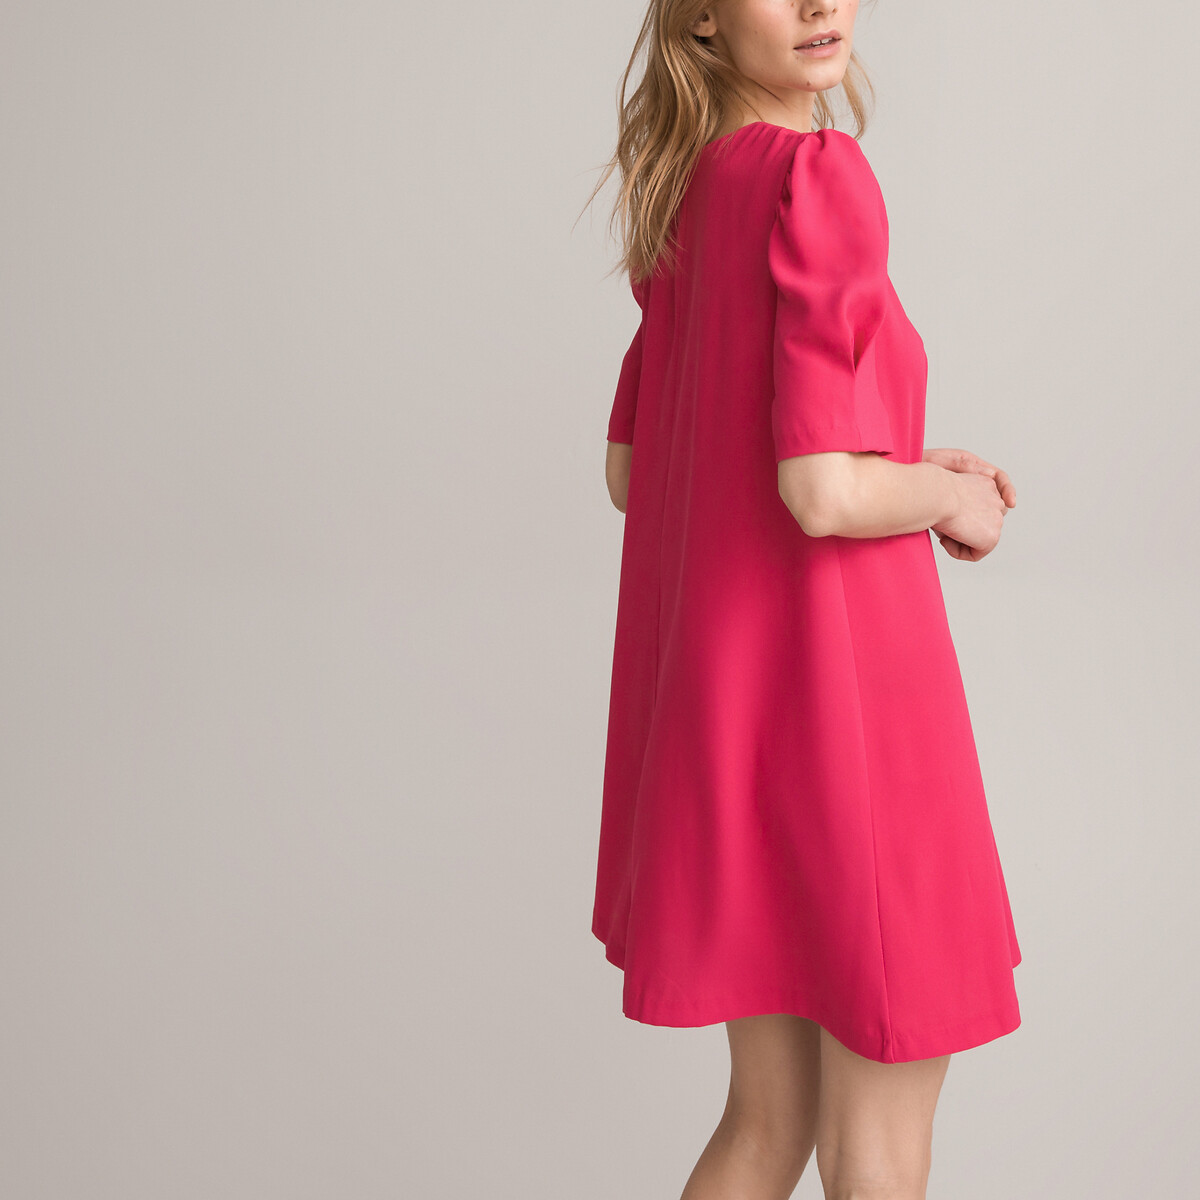 Платье Короткое с V-образным вырезом короткие рукава 42 розовый LaRedoute, размер 42 - фото 1